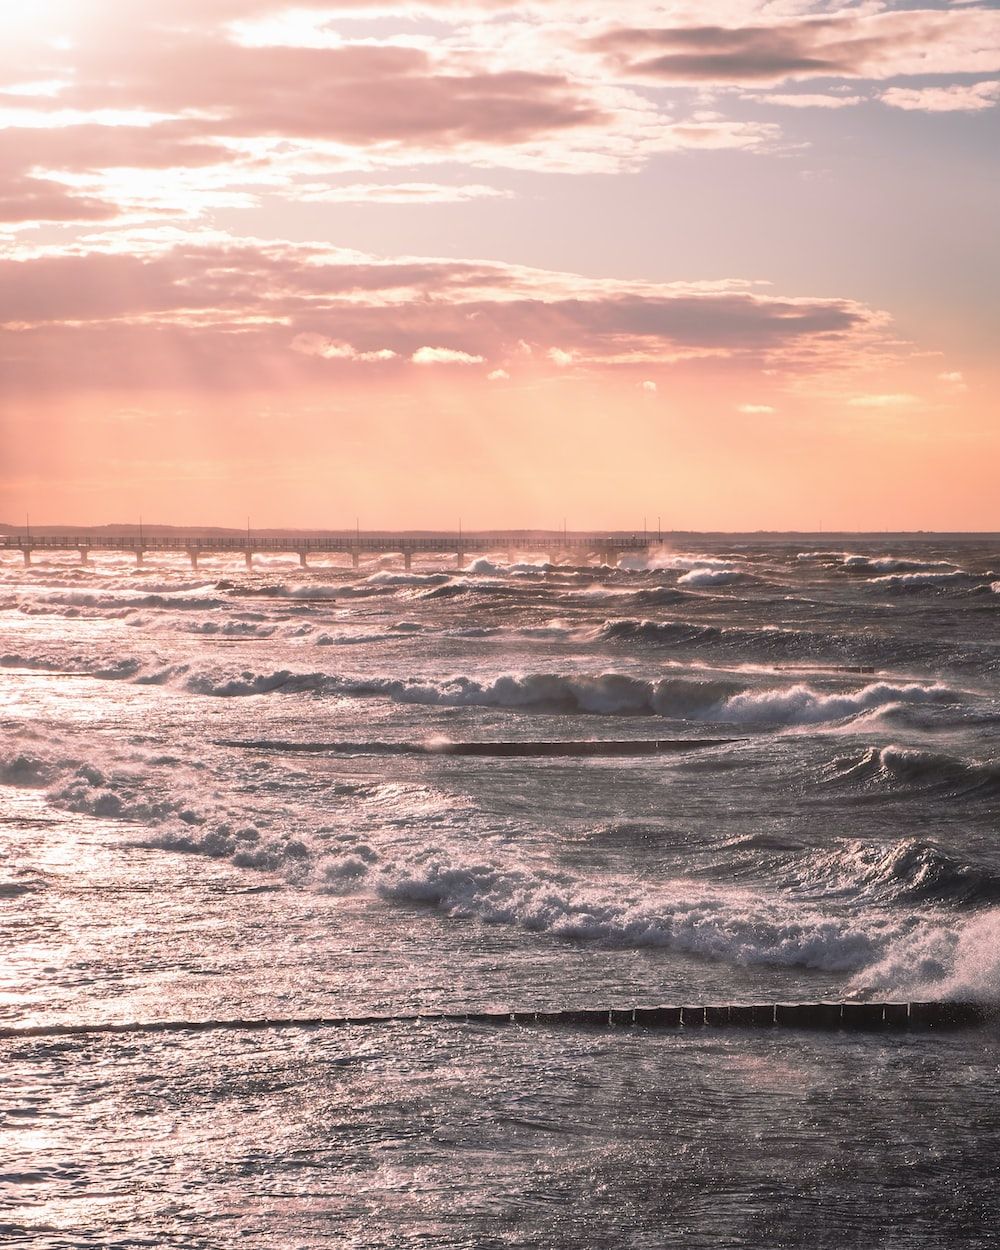 sea waves crashing on shore during sunset photo